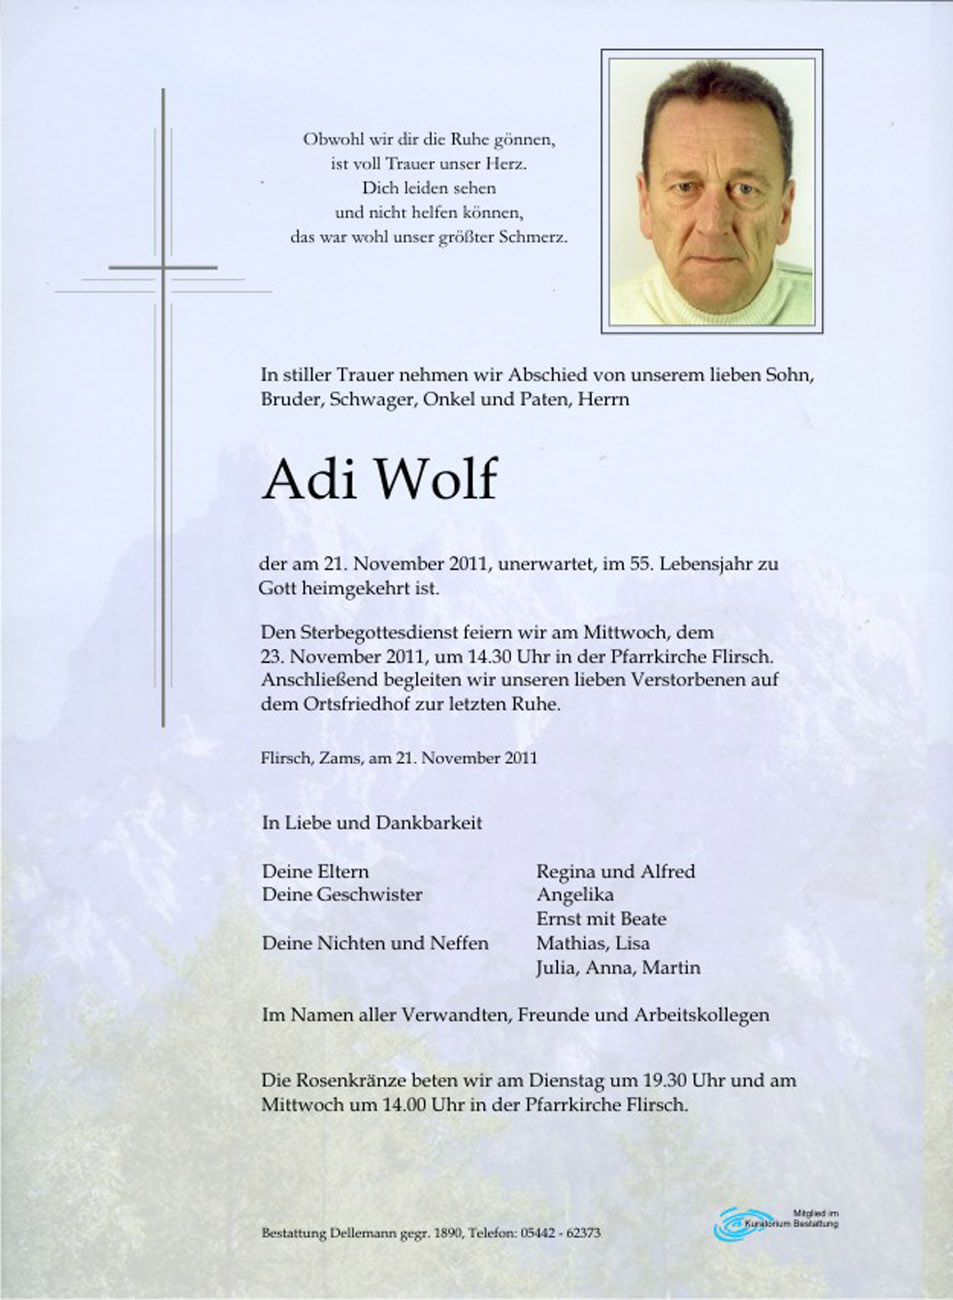   Adi Wolf